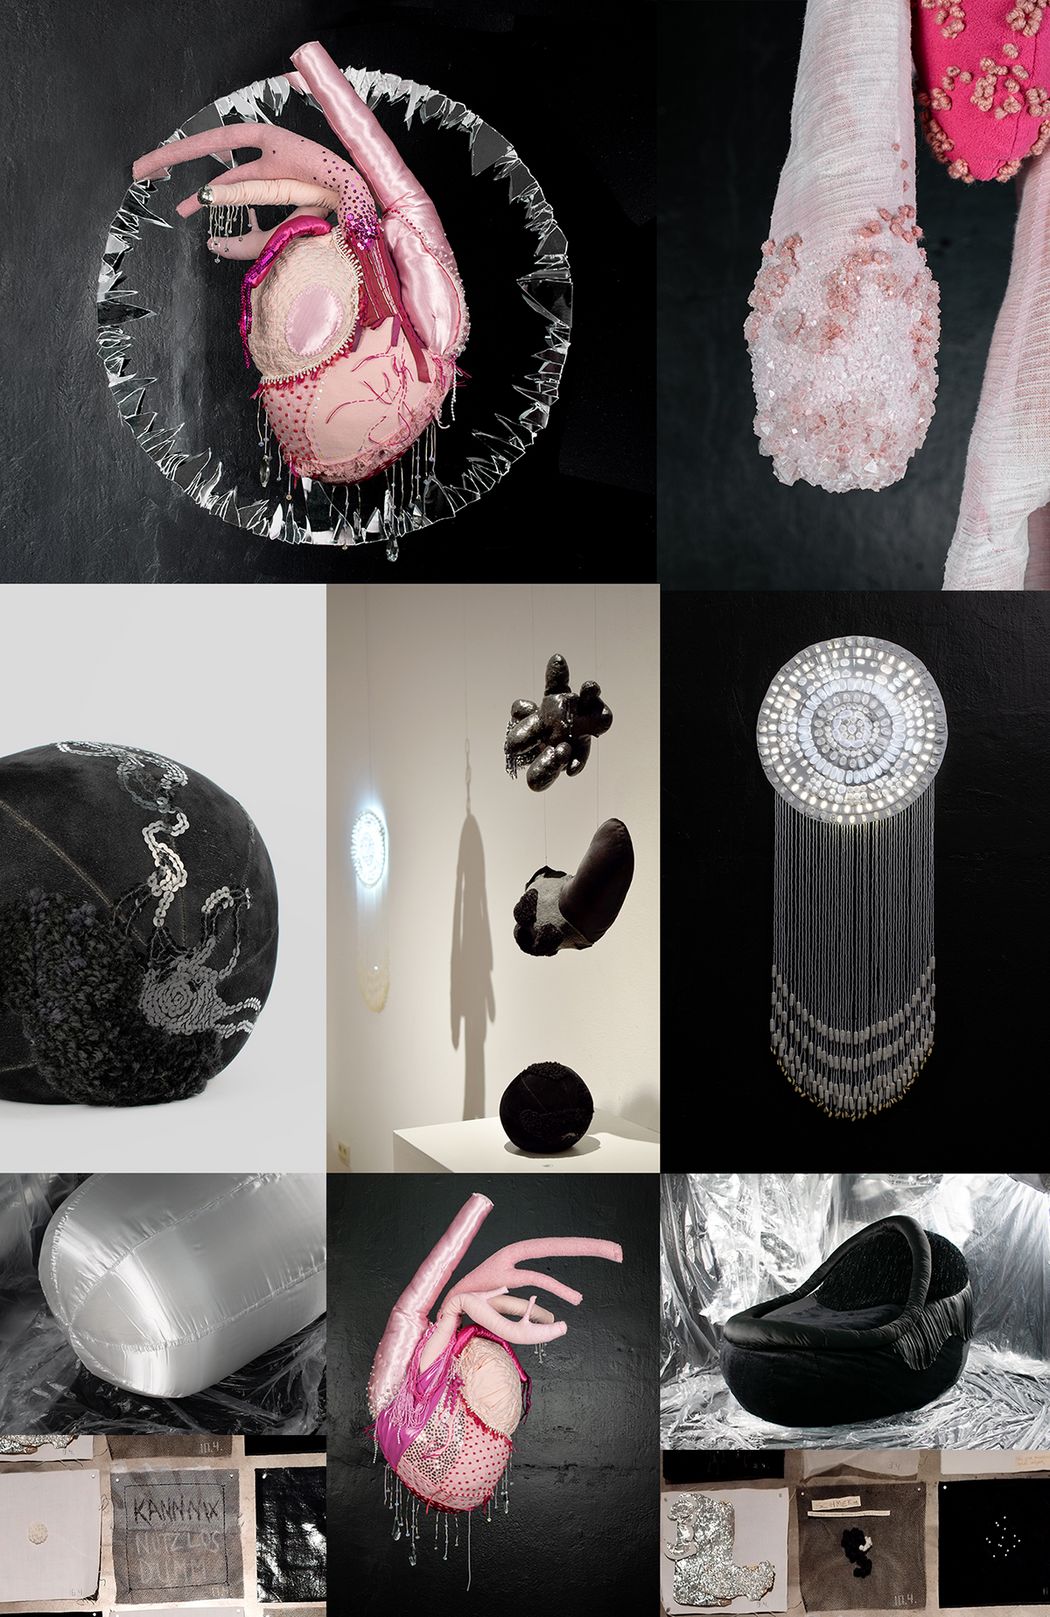 Foto: Master-Abschlussarbeit "Emotional instabil" von Vanessa Kessel, Fachrichtung Textilkunst/Textildesign, 2023, mehrere künstlerische Objekte